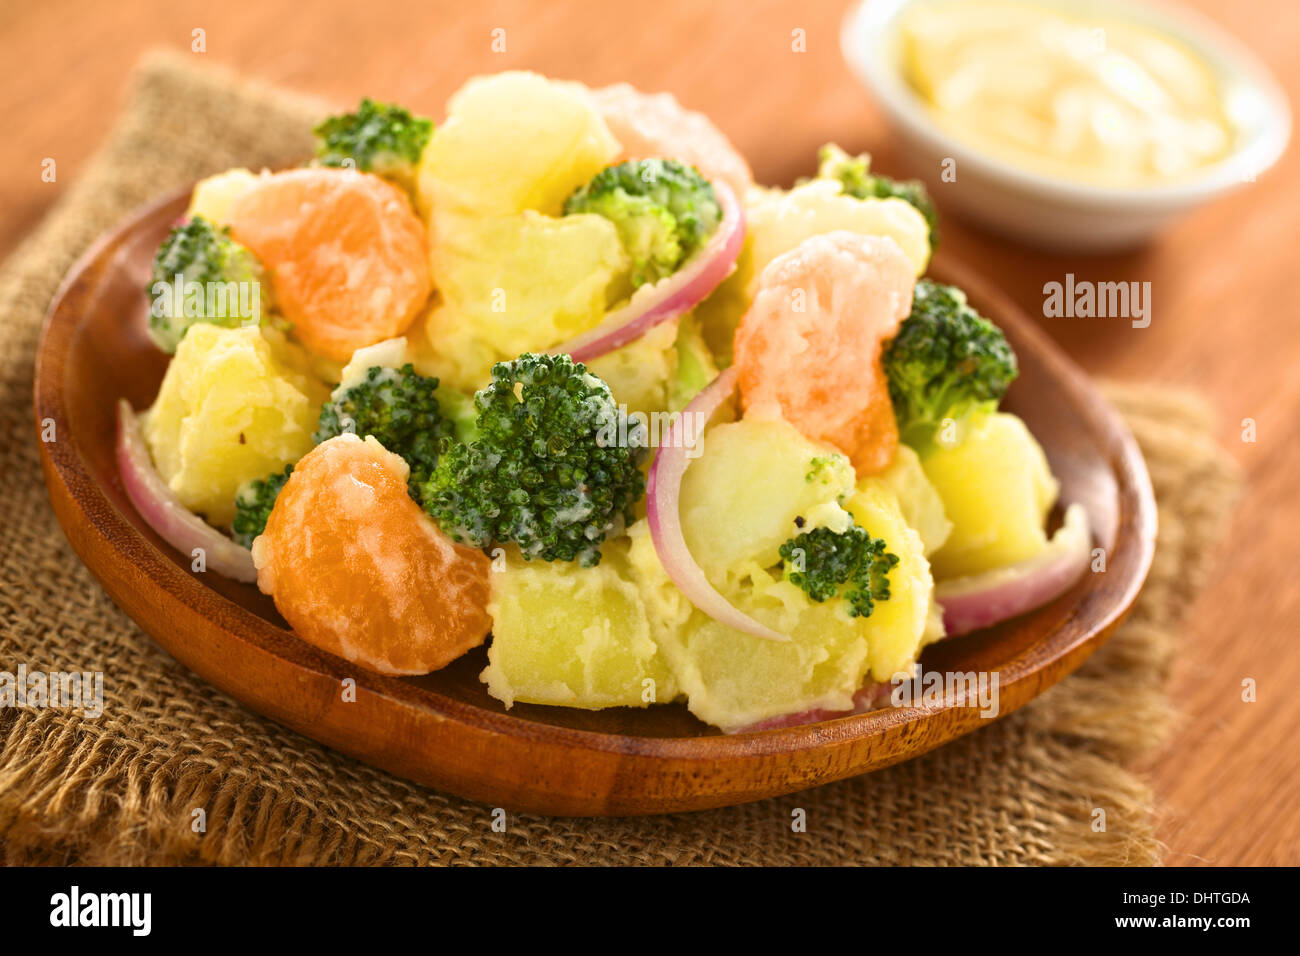 La pomme de terre fraîche, le brocoli, le mandarin et l'oignon salade avec mayonnaise sur plaque de bois Banque D'Images